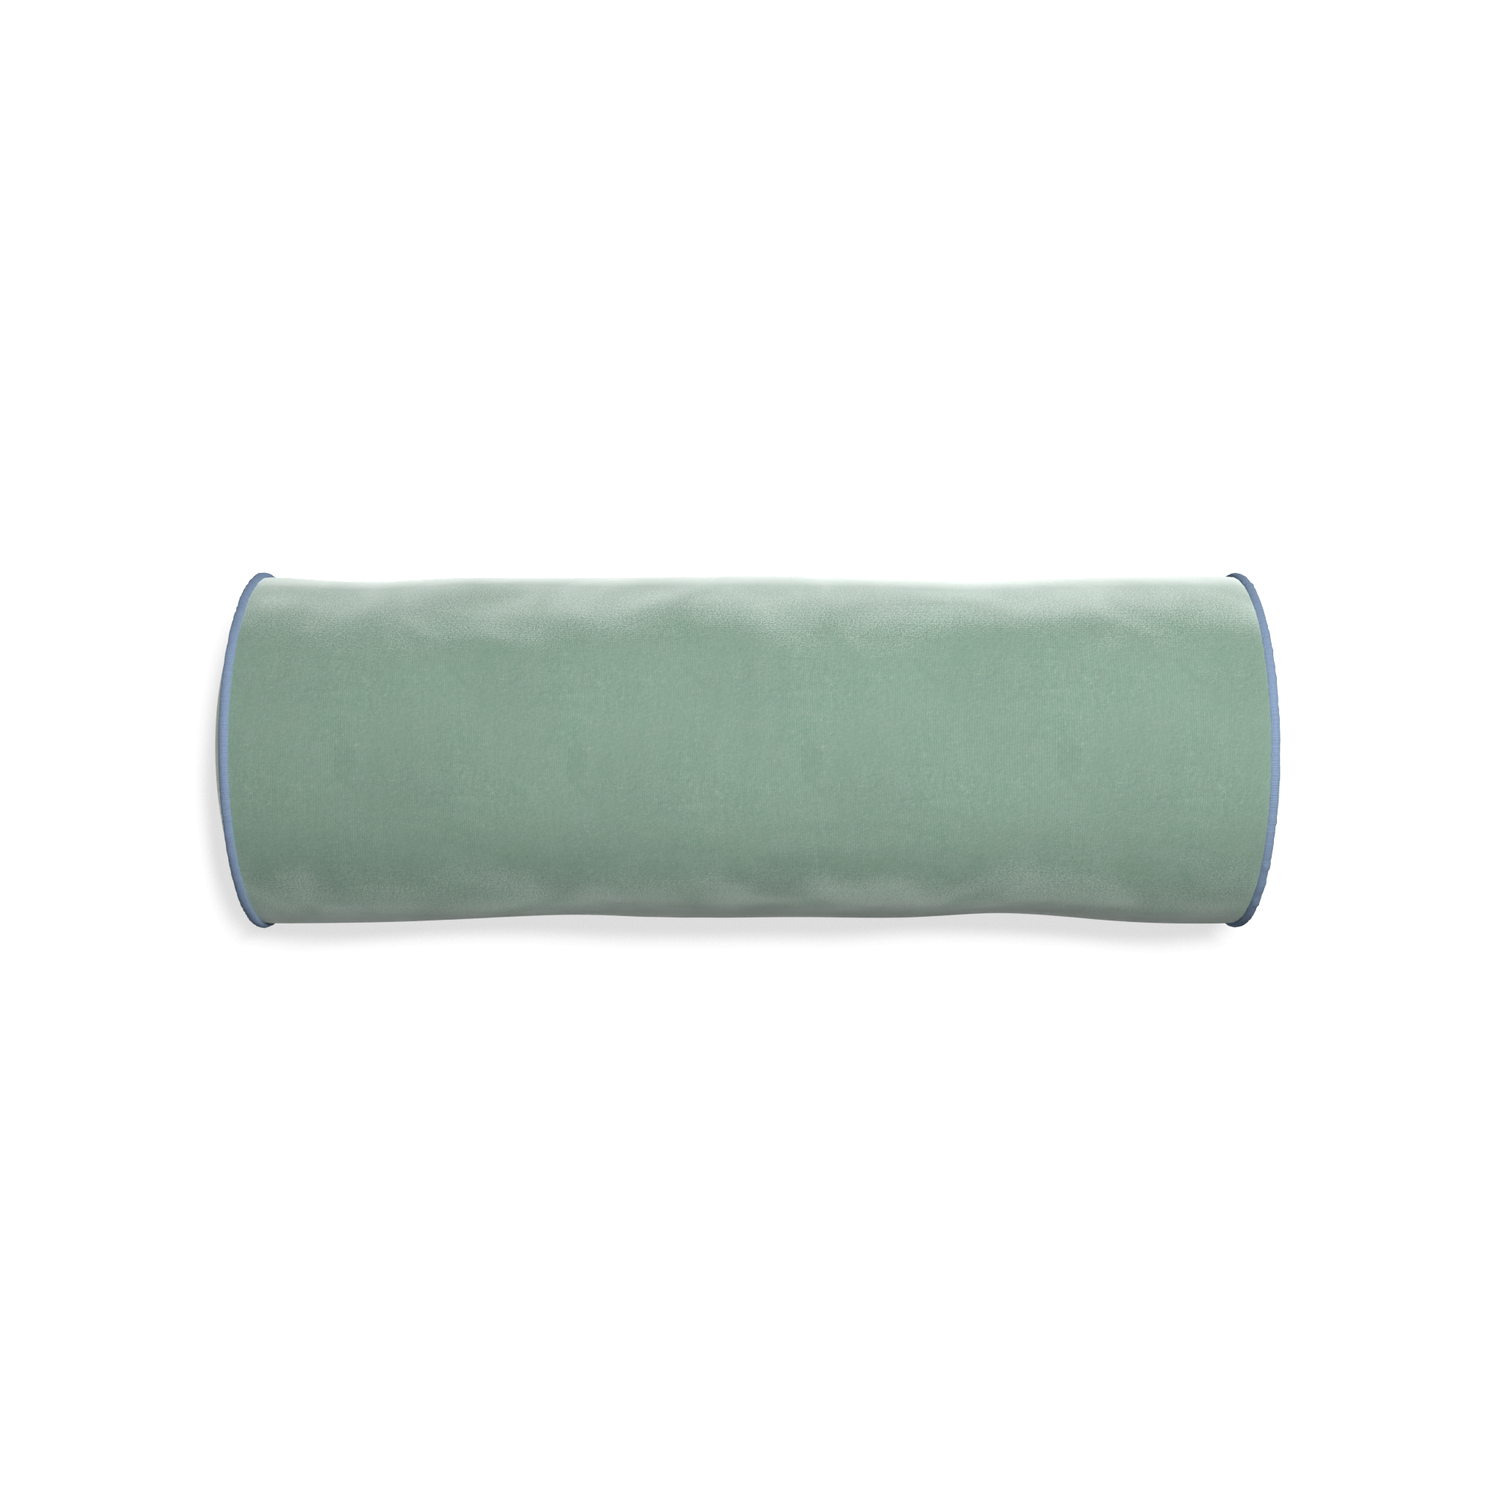 bolster blue green velvet pillow with sky blue piping